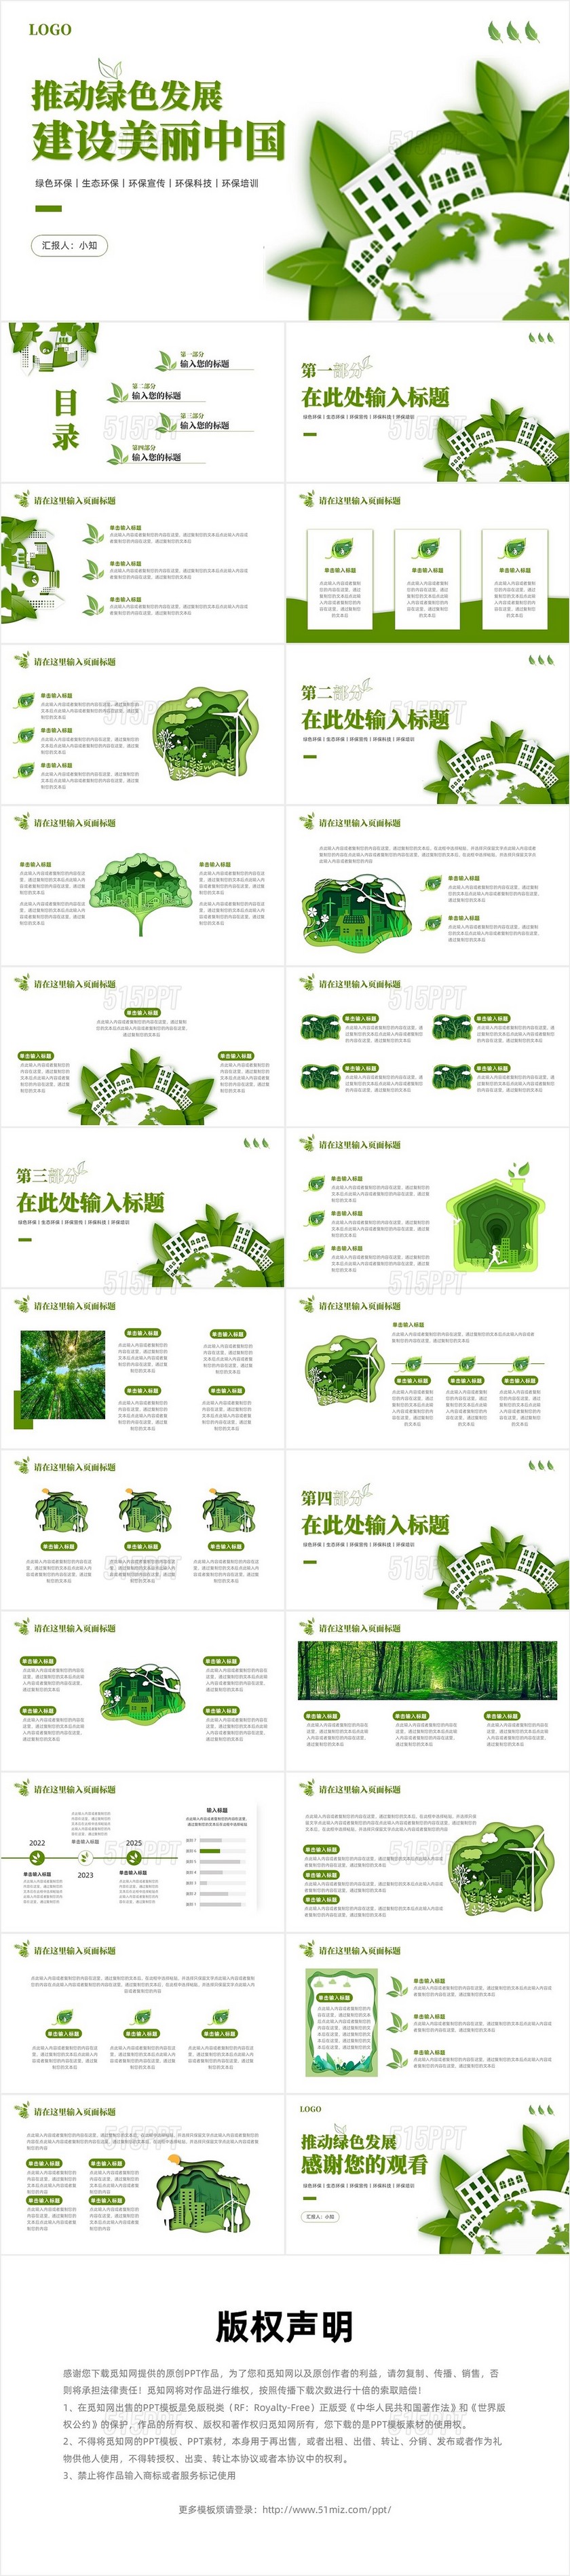 绿色简约剪纸推动绿色发展建设美丽中国PPT模板环保